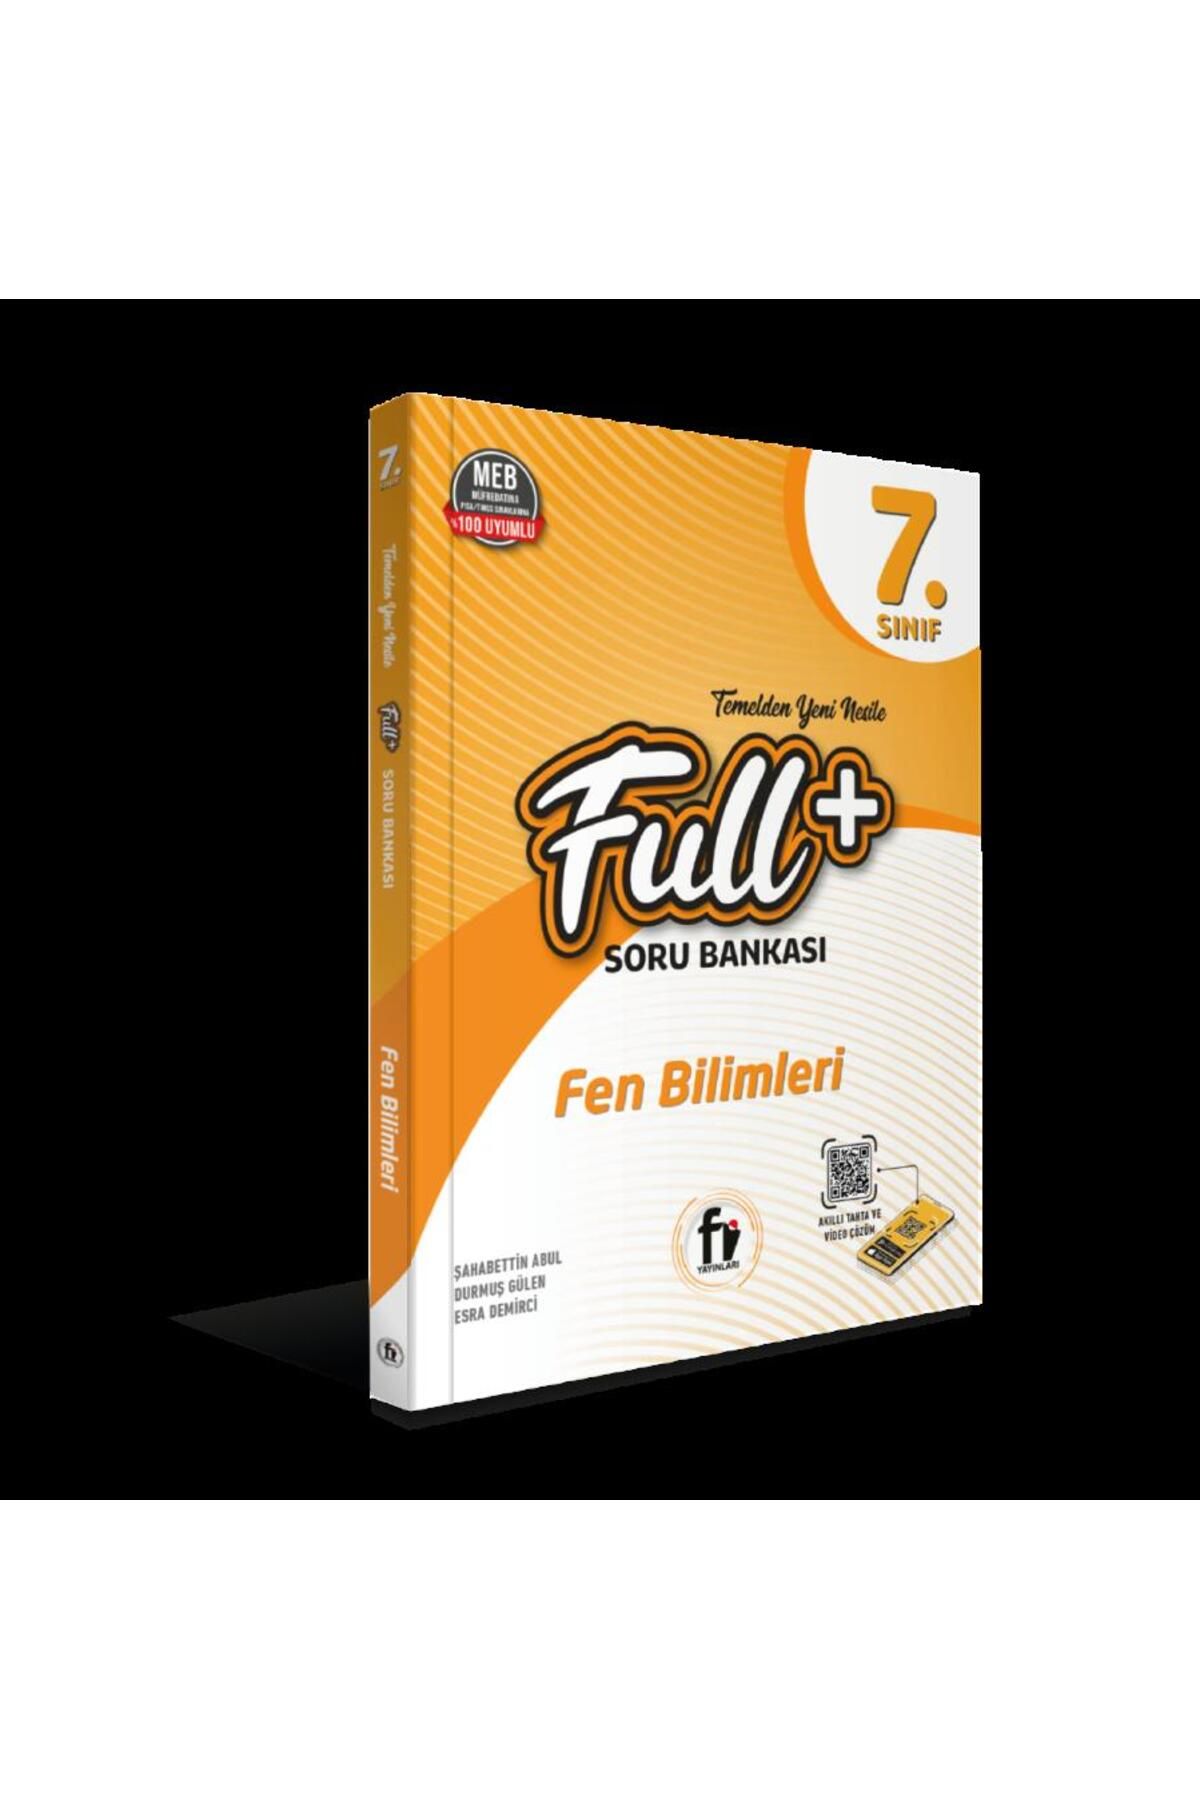 Fi Yayınları 7.SINIF FULL+ FEN BİLİMLERİ SORU BANKASI / Fİ YAYINLARI